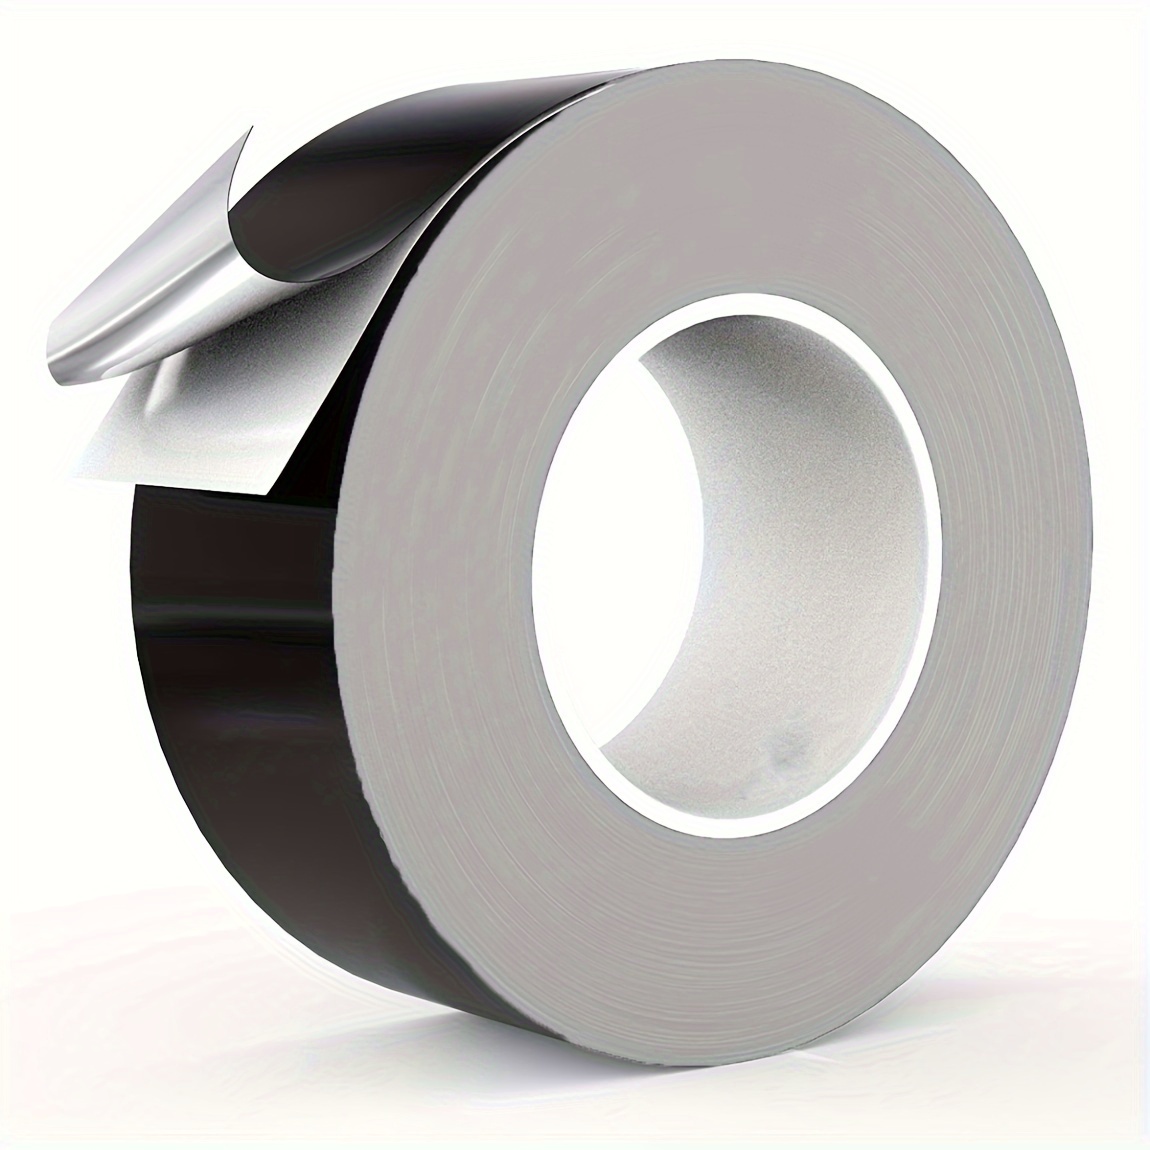  JINGGL Cinta adhesiva de 1 pieza/cinta de papel de aluminio,  adhesivo fuerte, sellado perfecto, cinta adhesiva de aire frío caliente  para reparación de metales de tubería, 0.002 in de grosor (color 